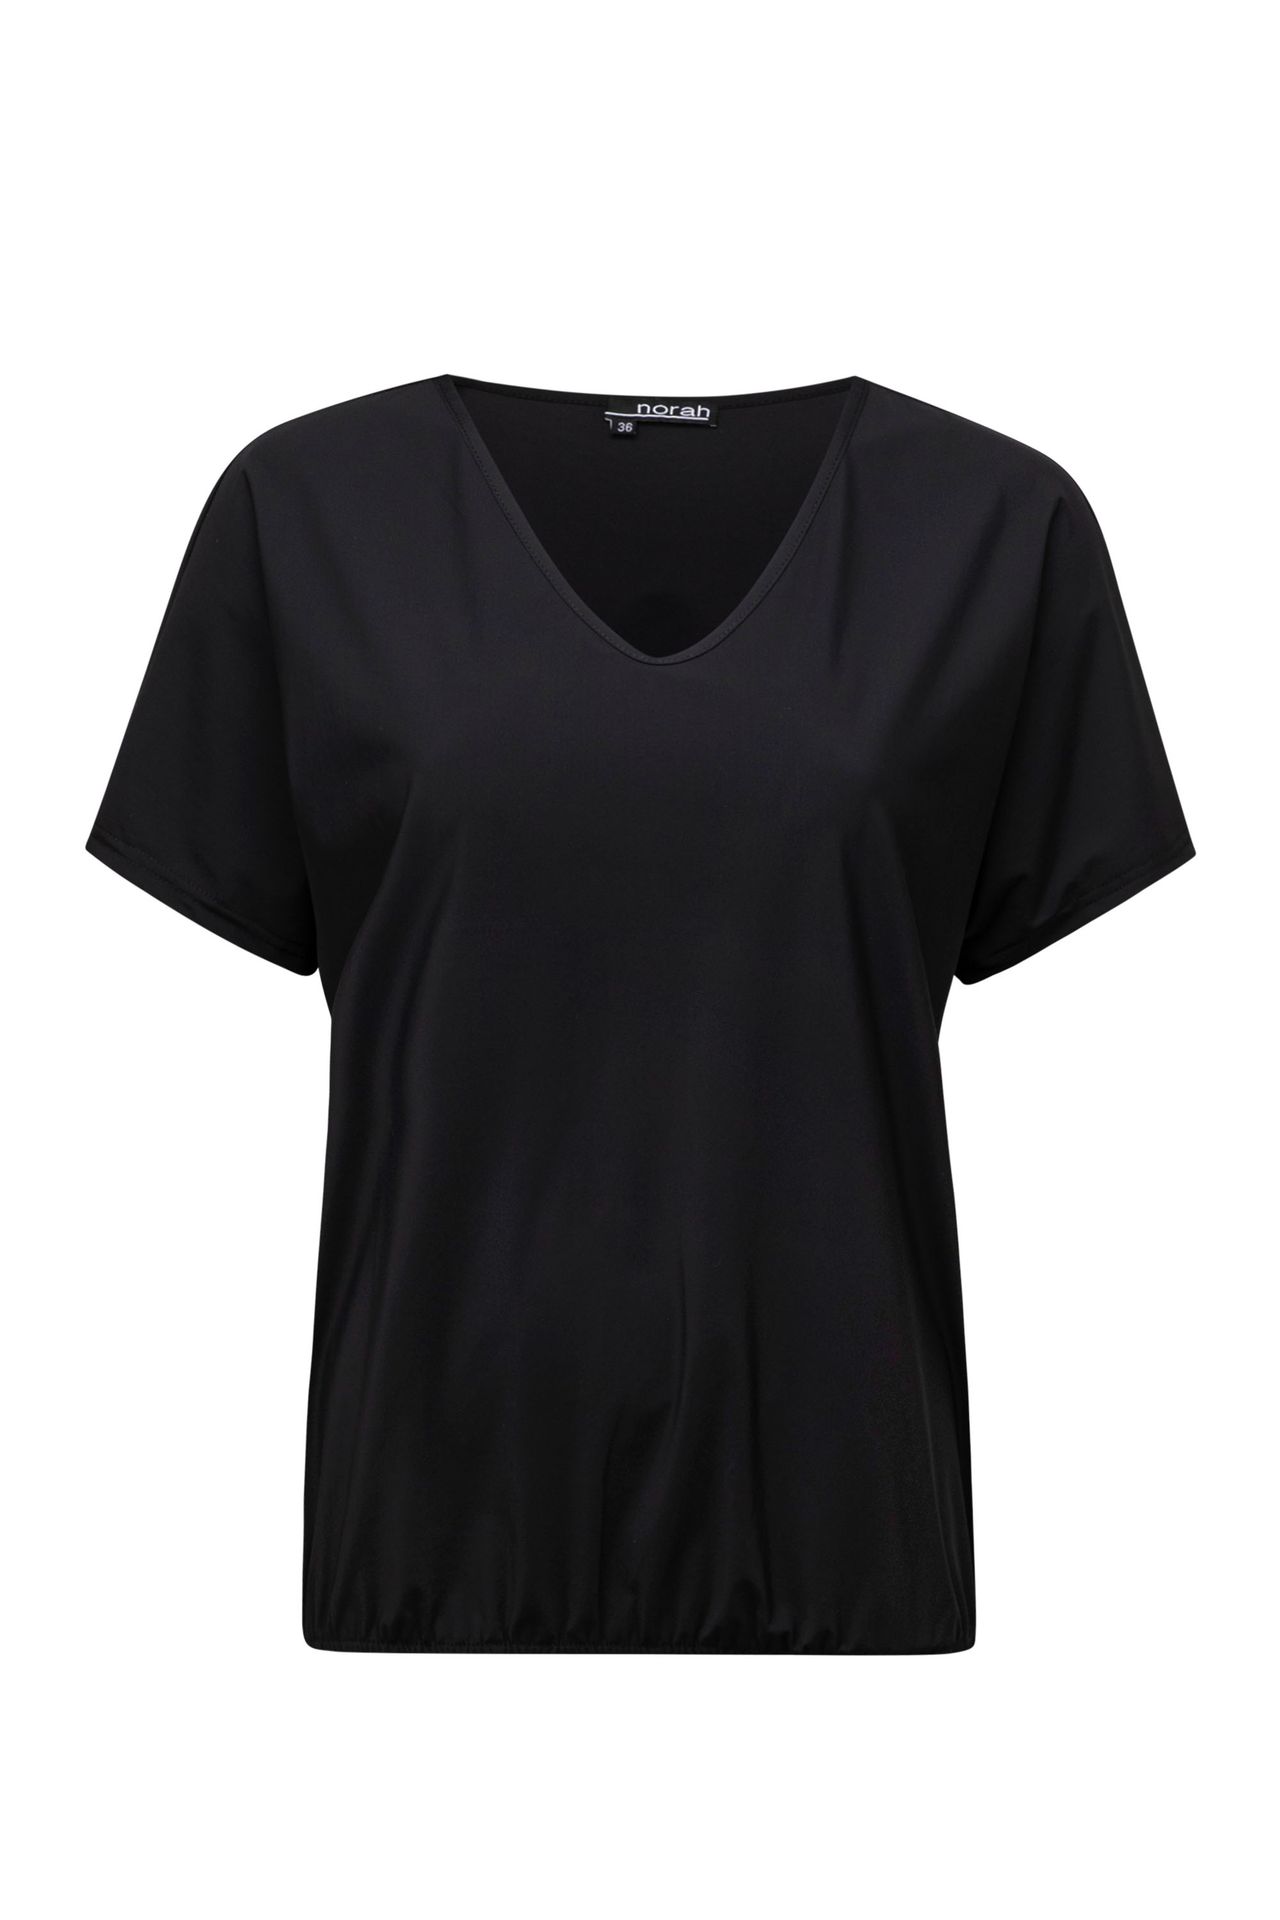 Norah Shirt travelstof zwart black 213467-001